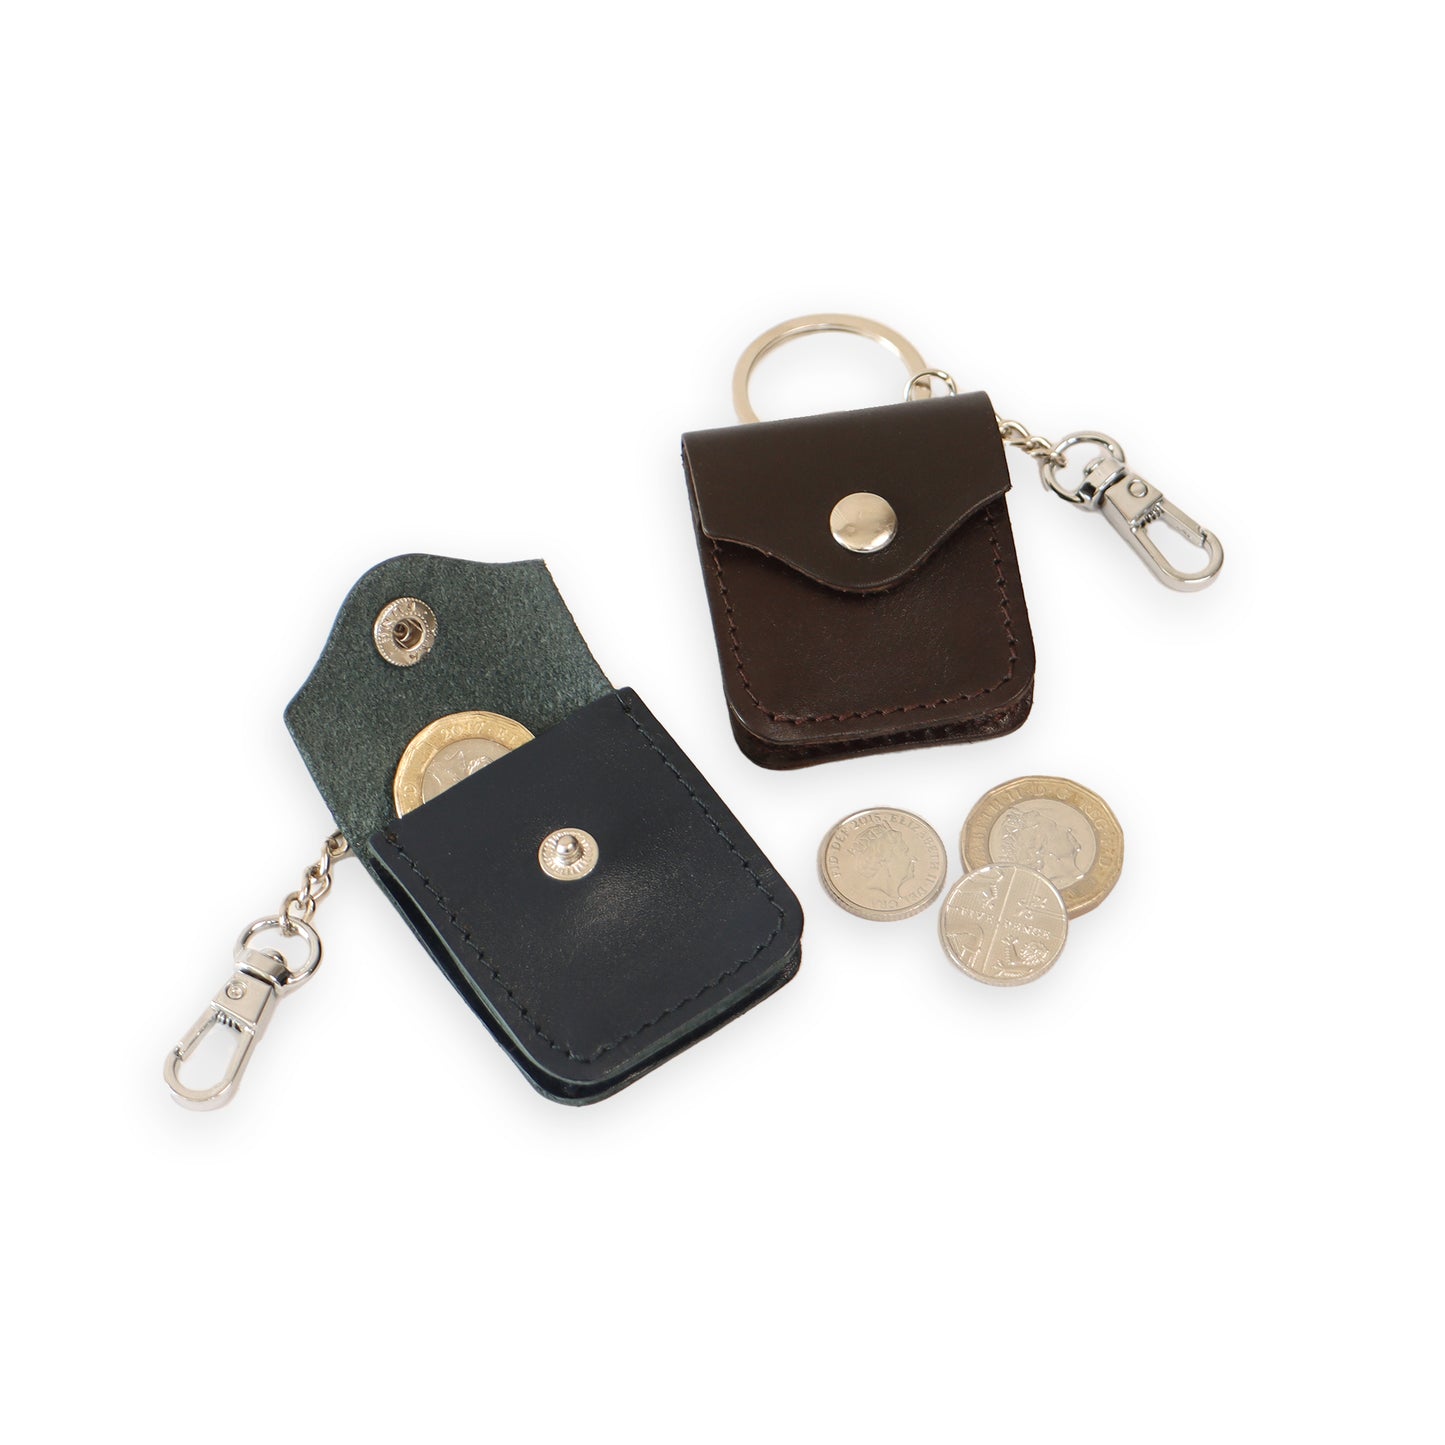 Geldbörse aus Leder mit Schlüsselanhänger. Münzetui aus Leder